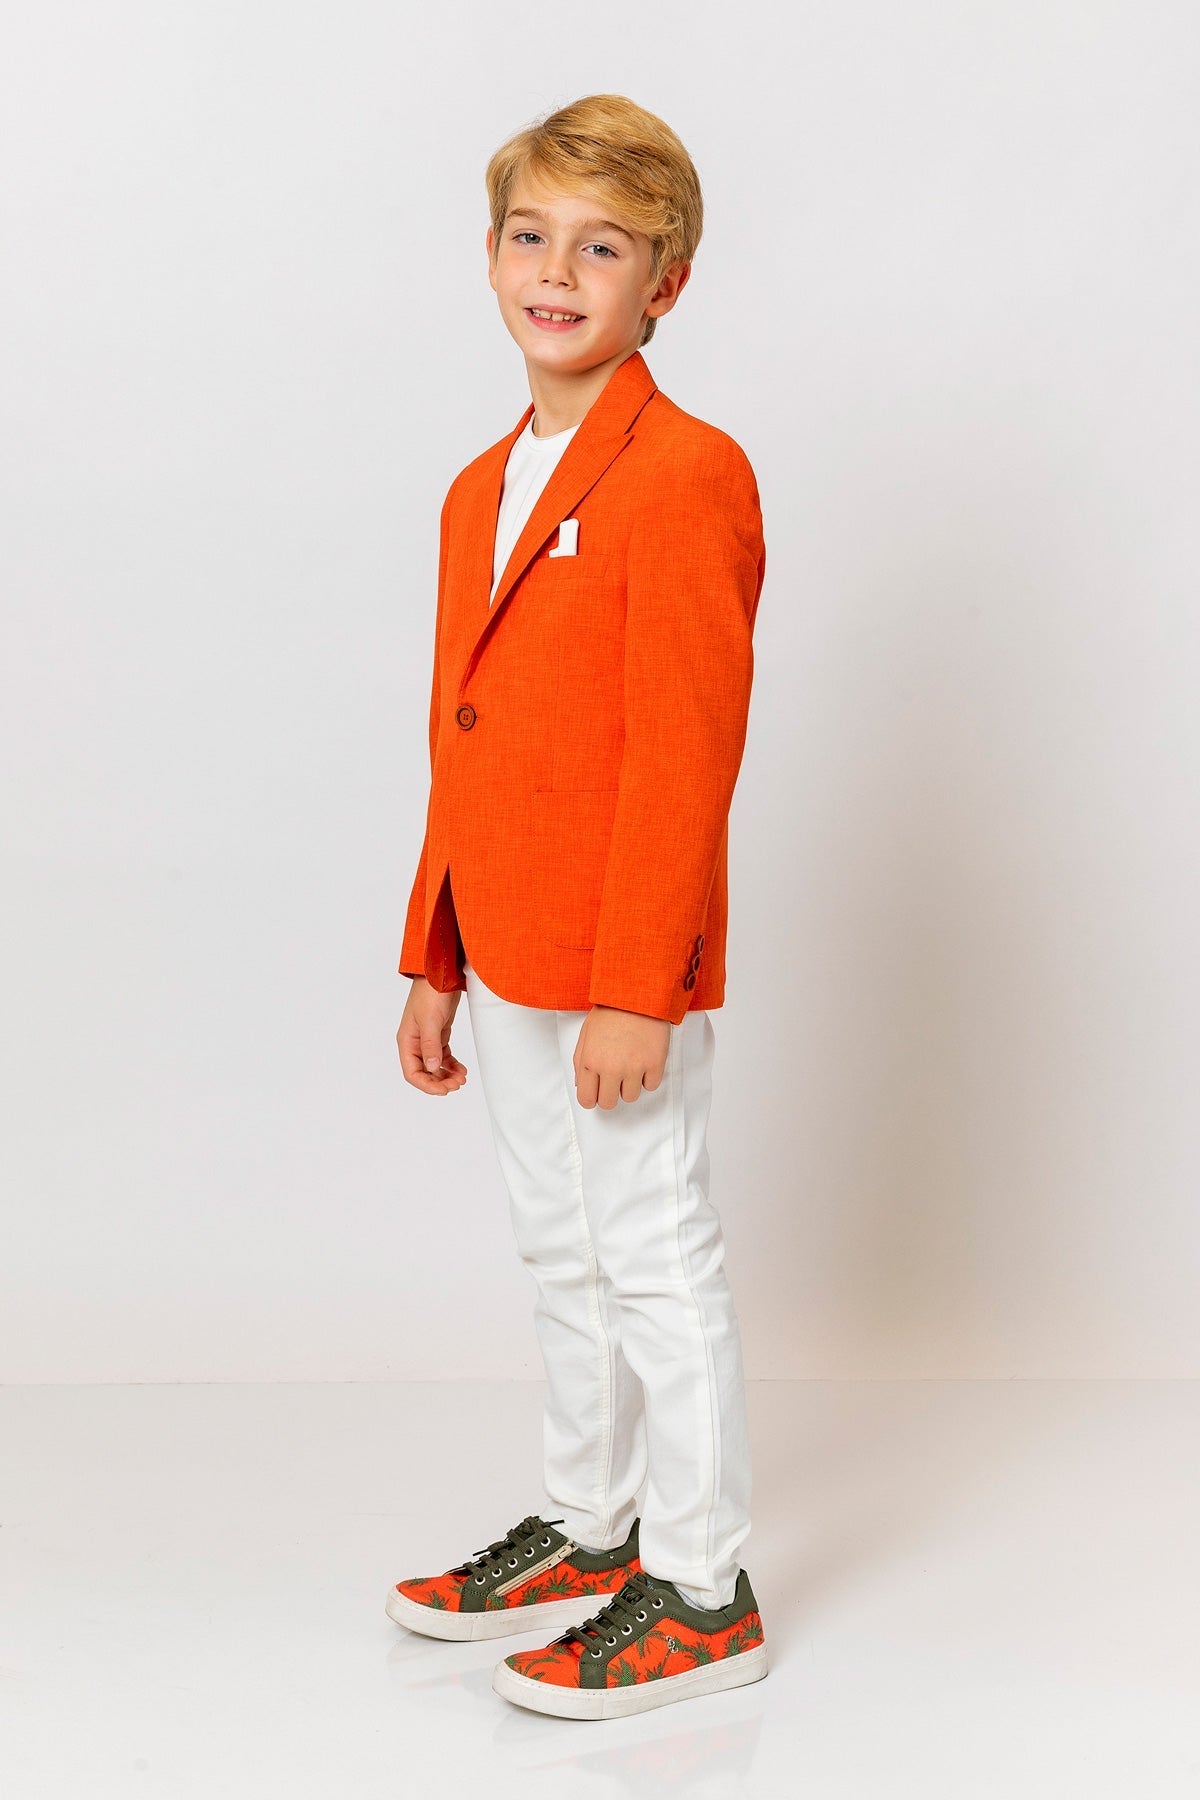 InCity Kids Boys Fashion Suit Blazer InCity Boys & Girls